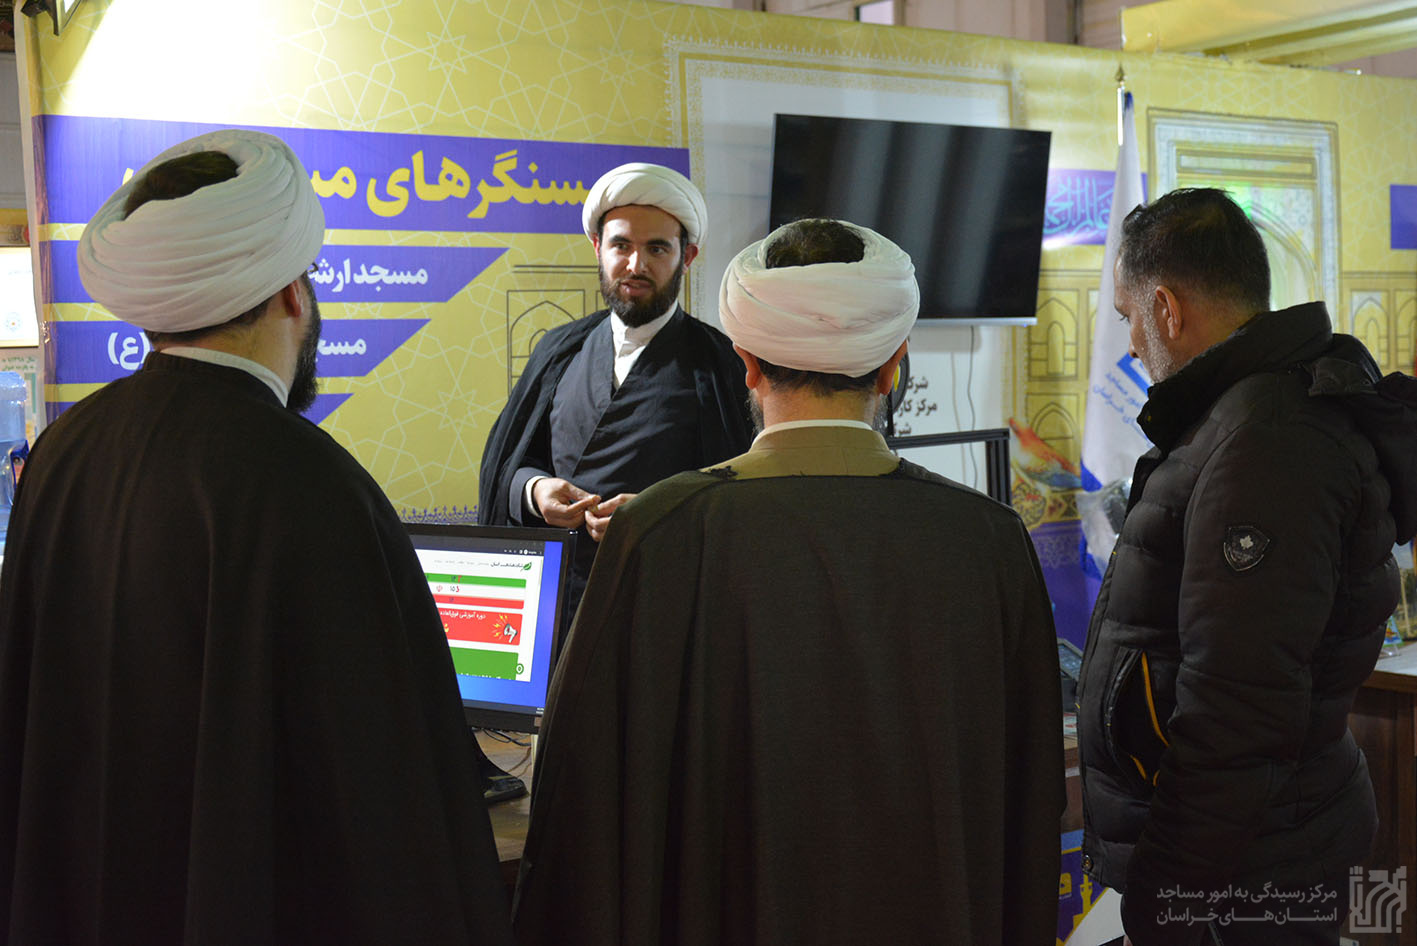 گزارش تصویری حضور همسنگرهای مسجدی در نمایشگاه پژوهش و فناوری استان